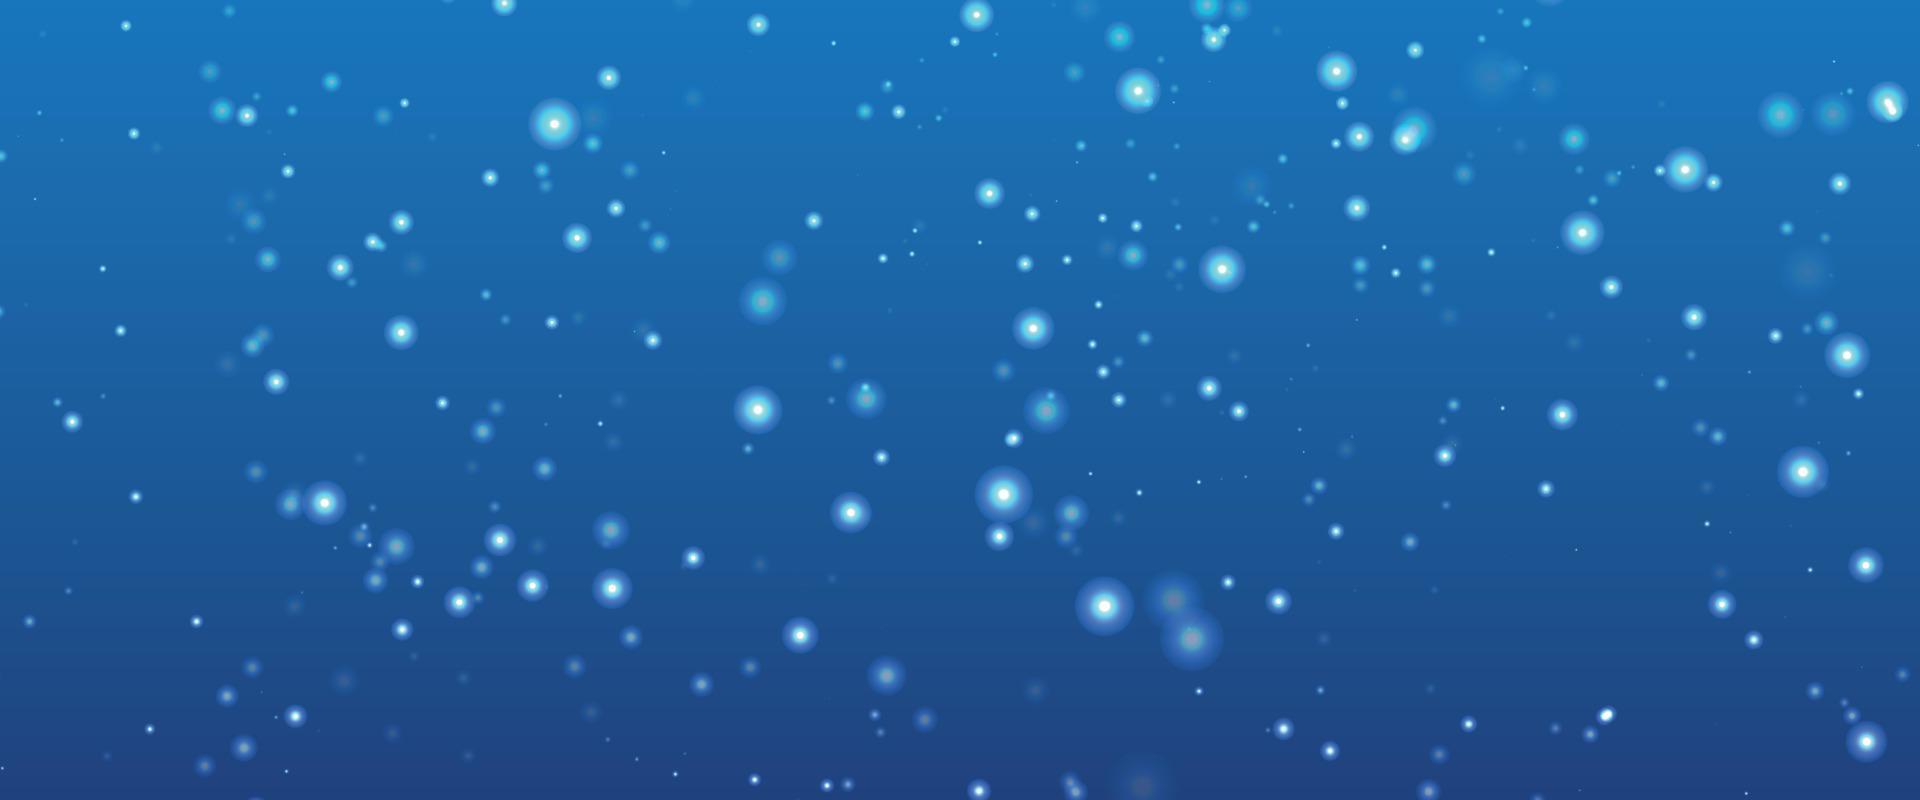 kleurrijk achtergrond wazig sneeuw. bokeh achtergrond met sneeuwvlok. winter glinsterende sneeuwvlokken kolken bokeh achtergrond, backdrop met sprankelend blauw sterren. sneeuwvlok winter seizoen. vector